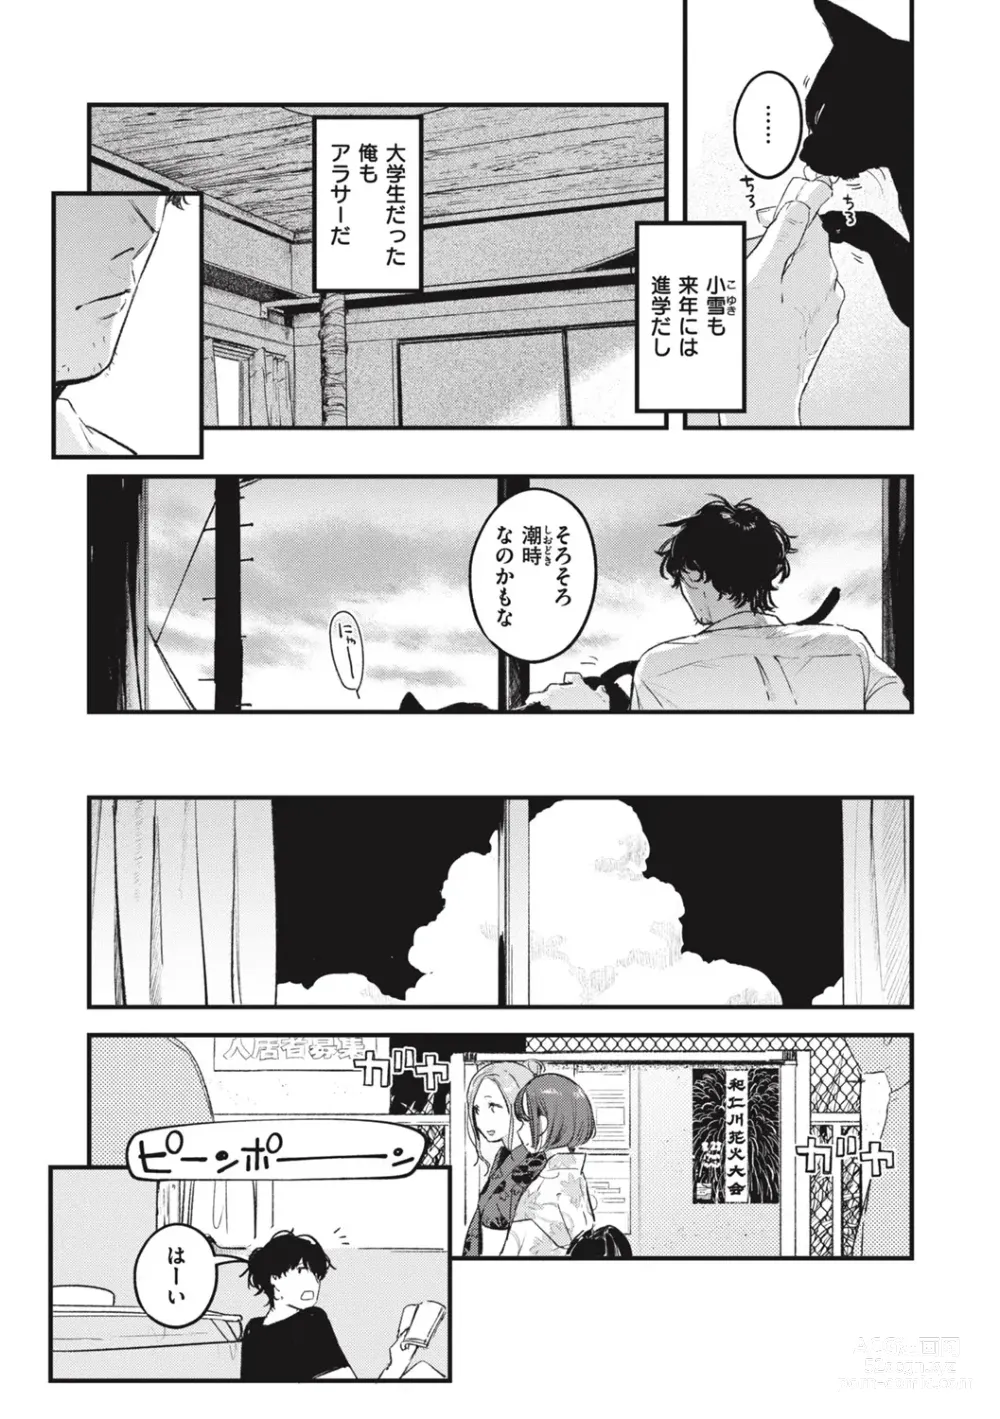 Page 14 of manga Koi no Mukidashi